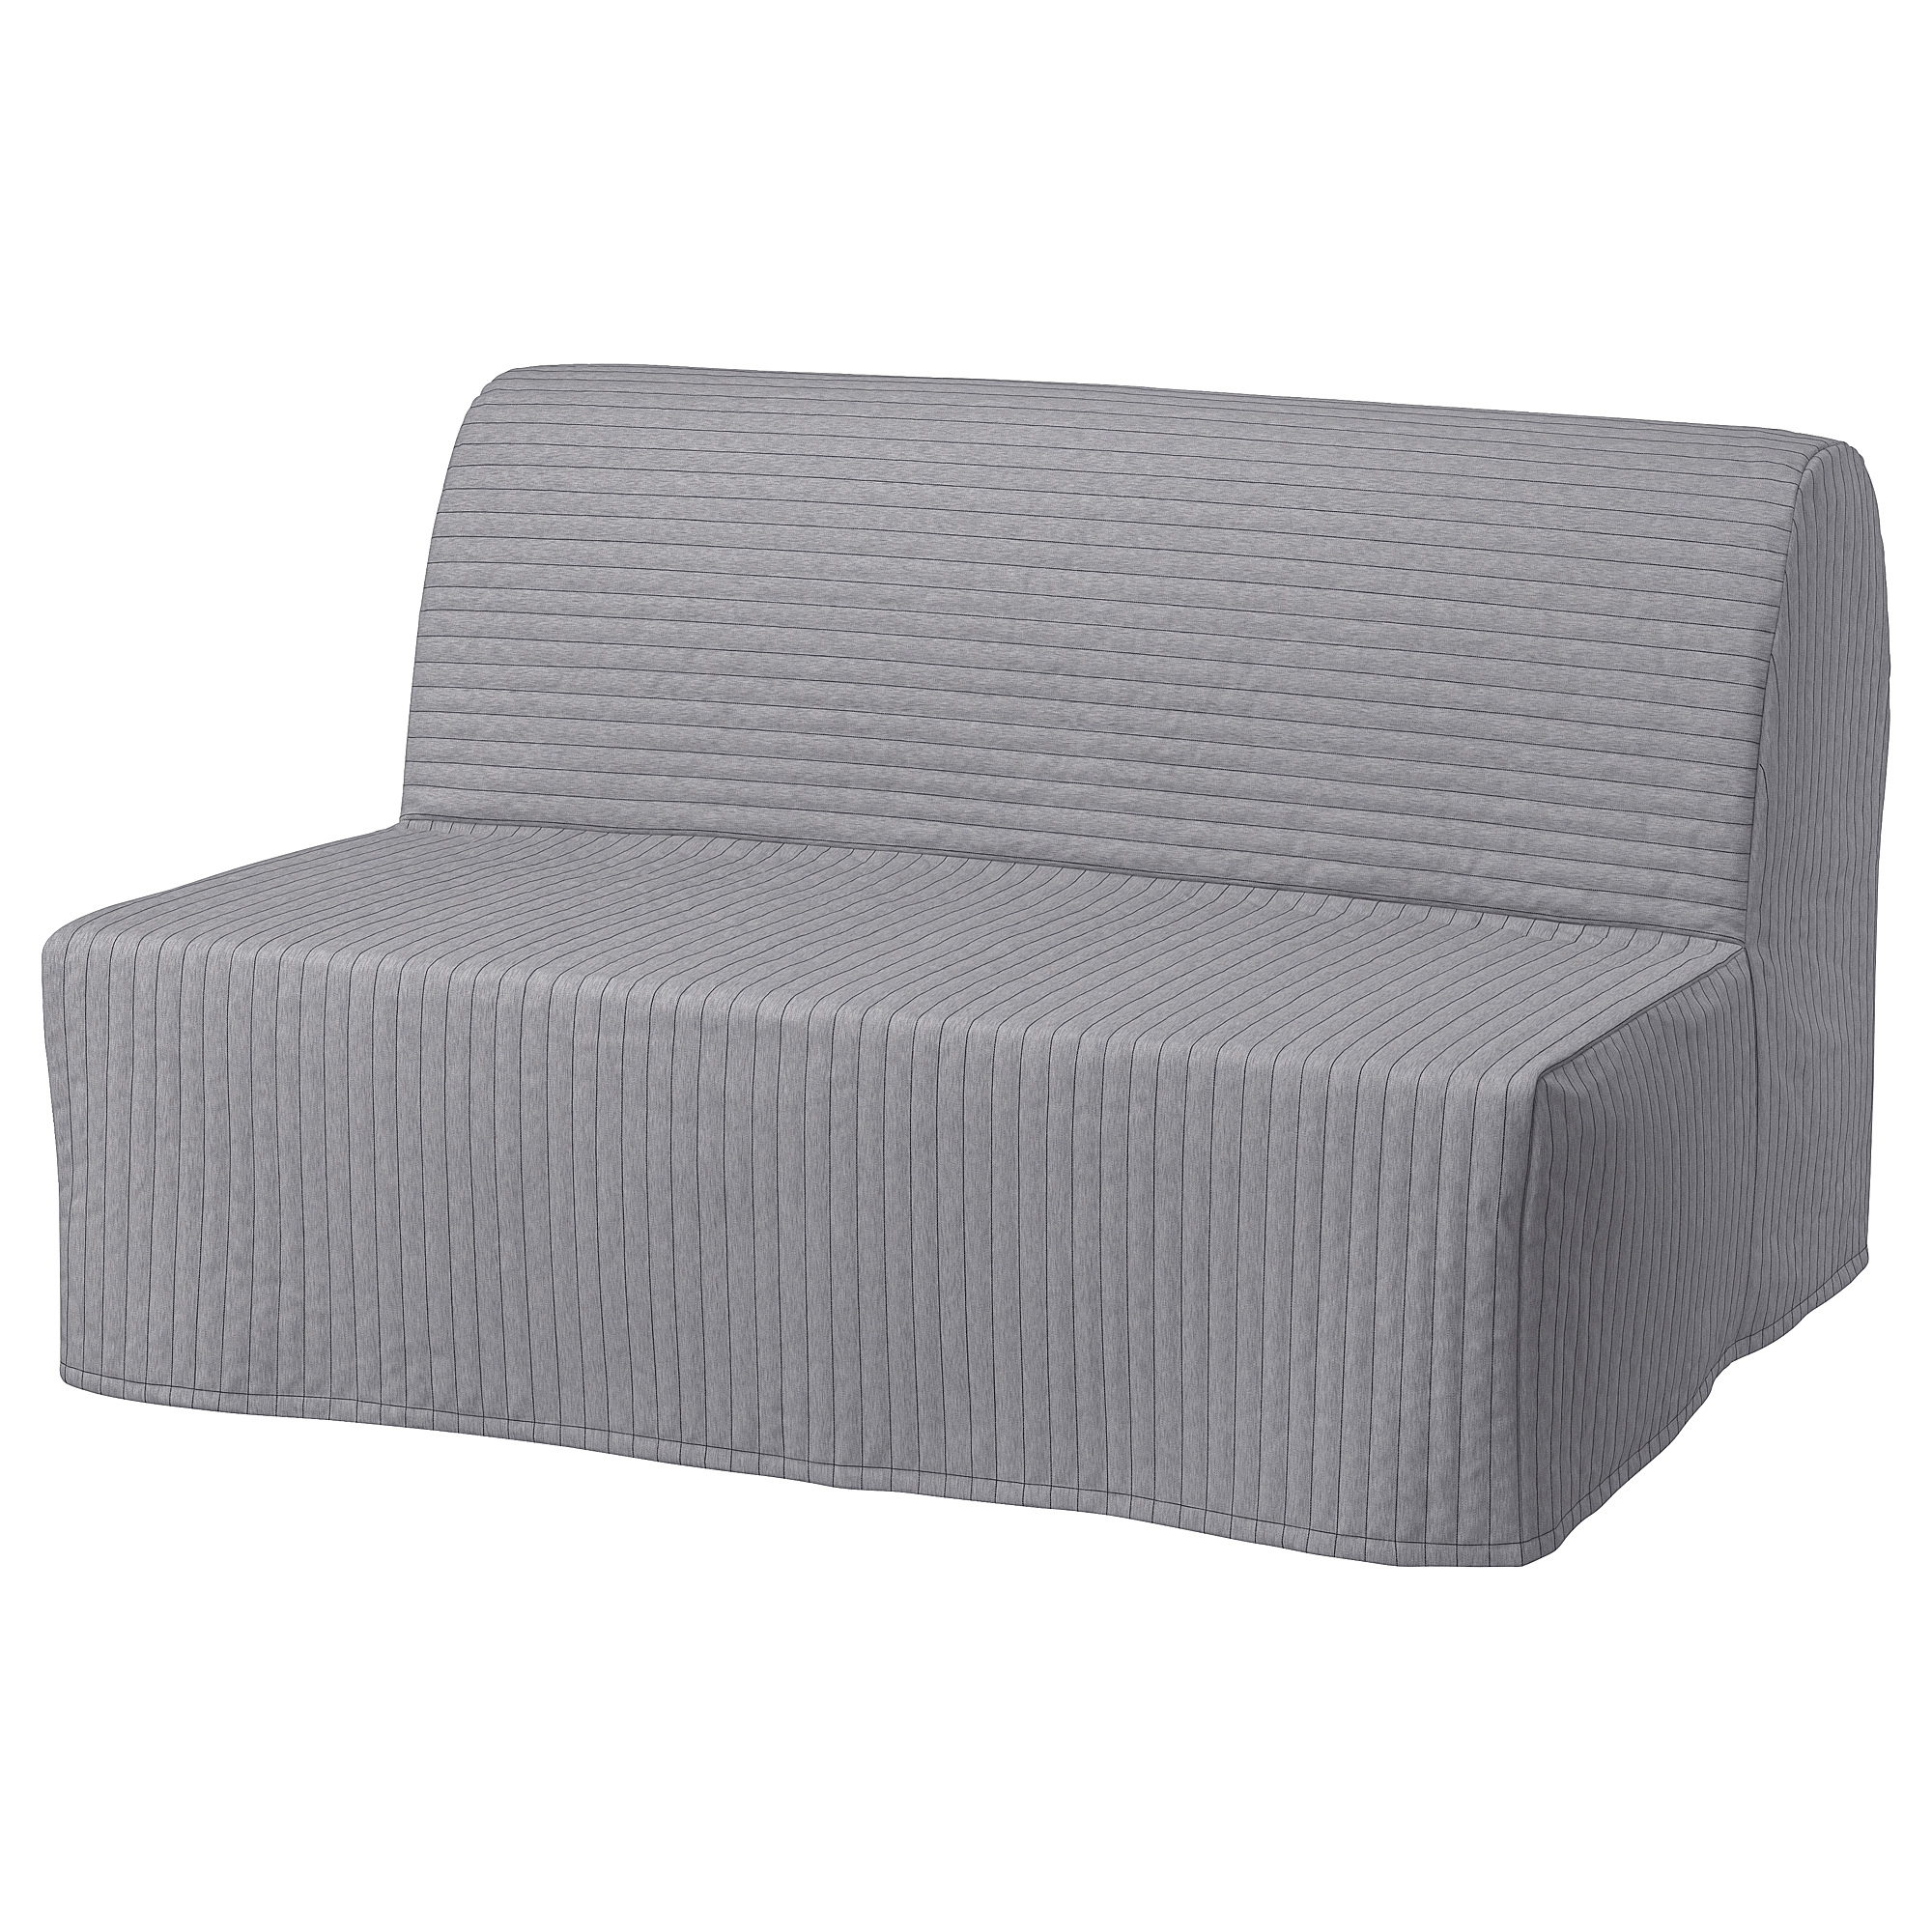 LYCKSELE MURBO 2-seat sofa-bed